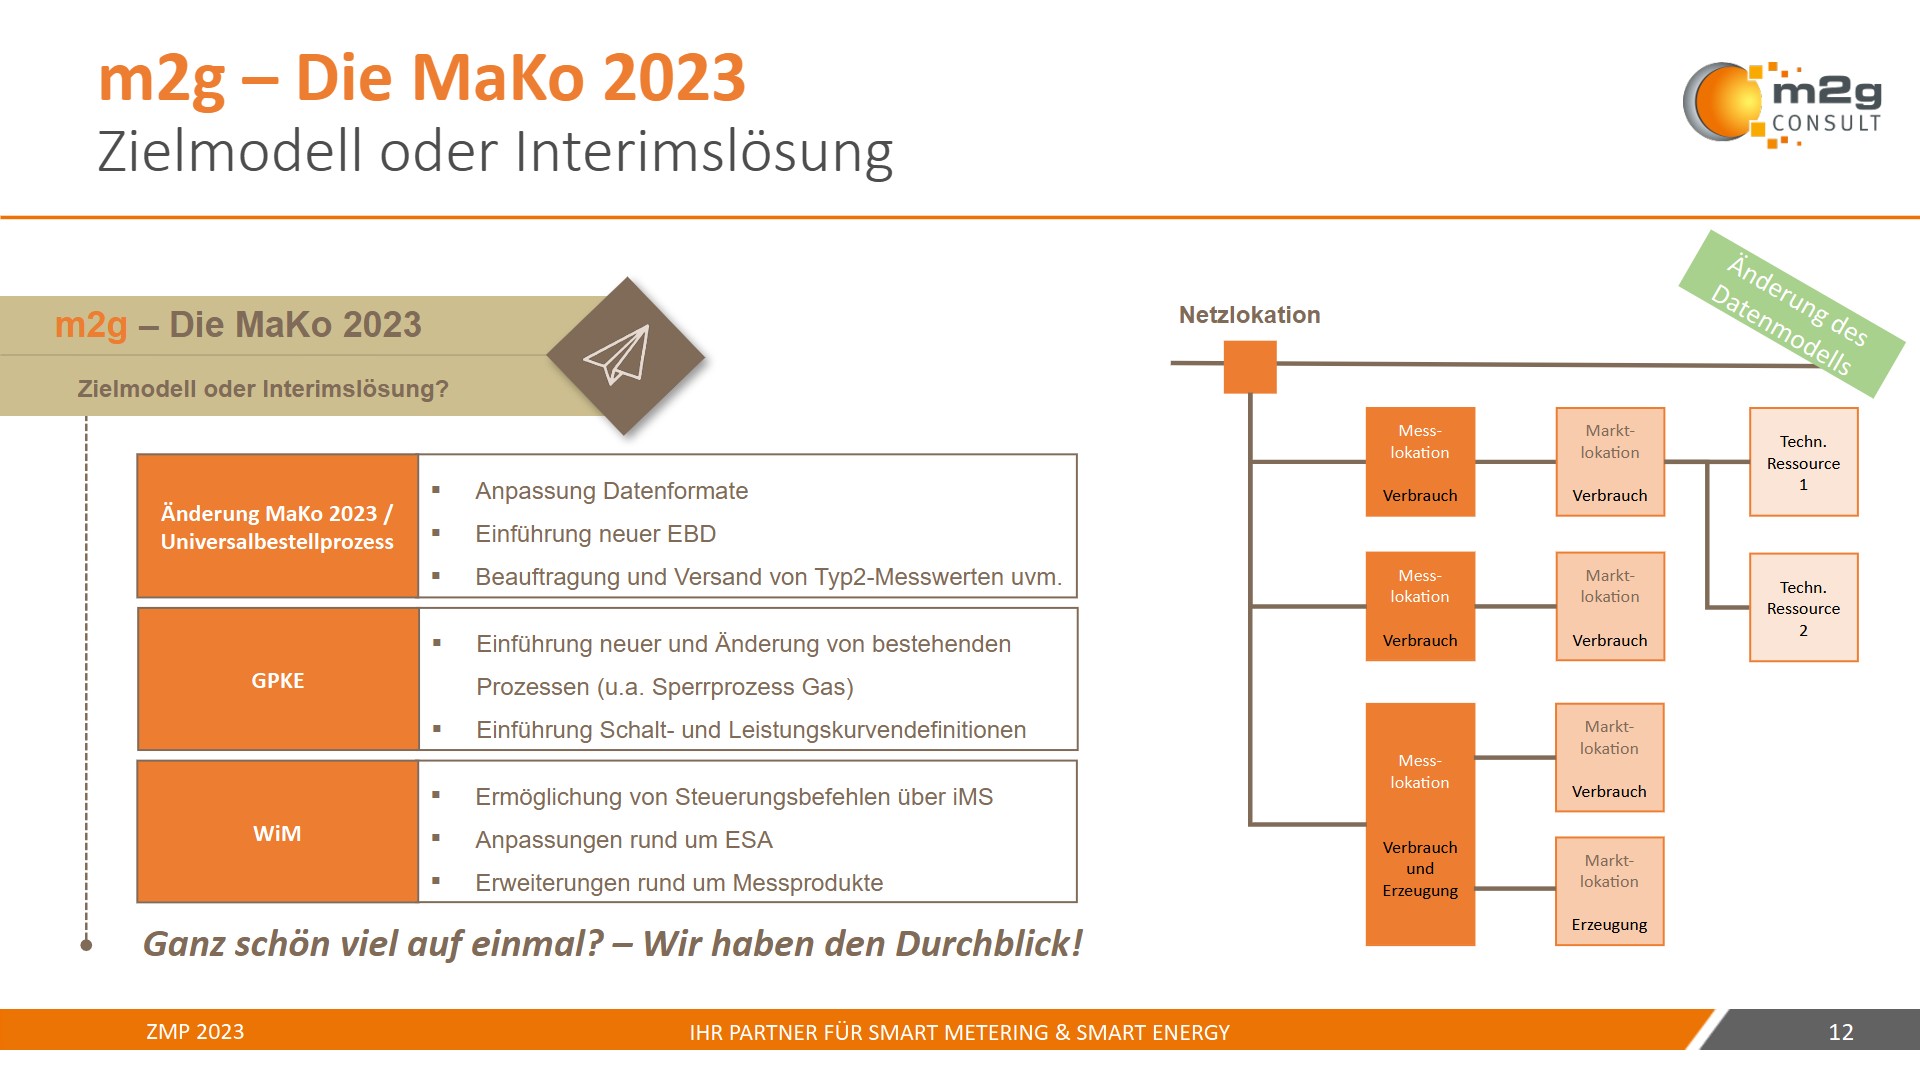 m2g-Consult - Die MaKo 2023